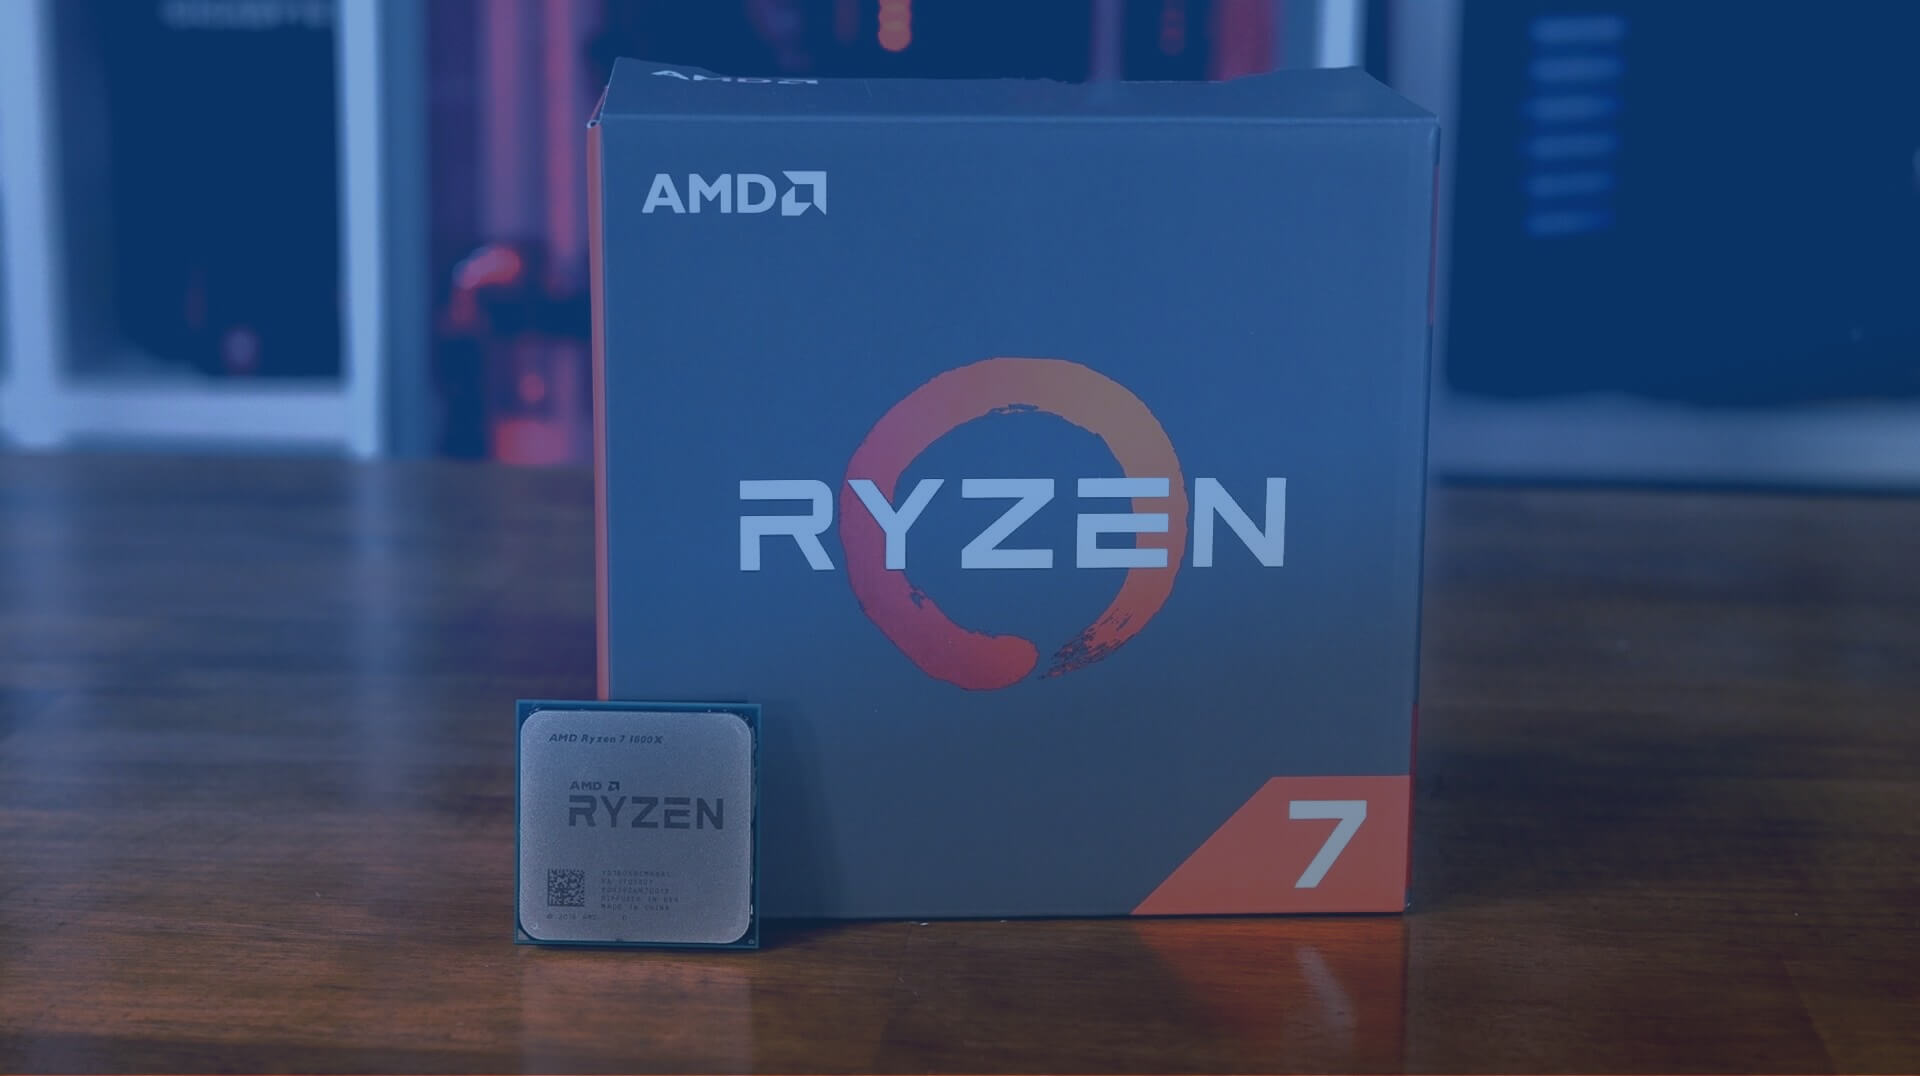 مراجعة AMD Ryzen: Ryzen 7 1800X و 1700X اختبر 57